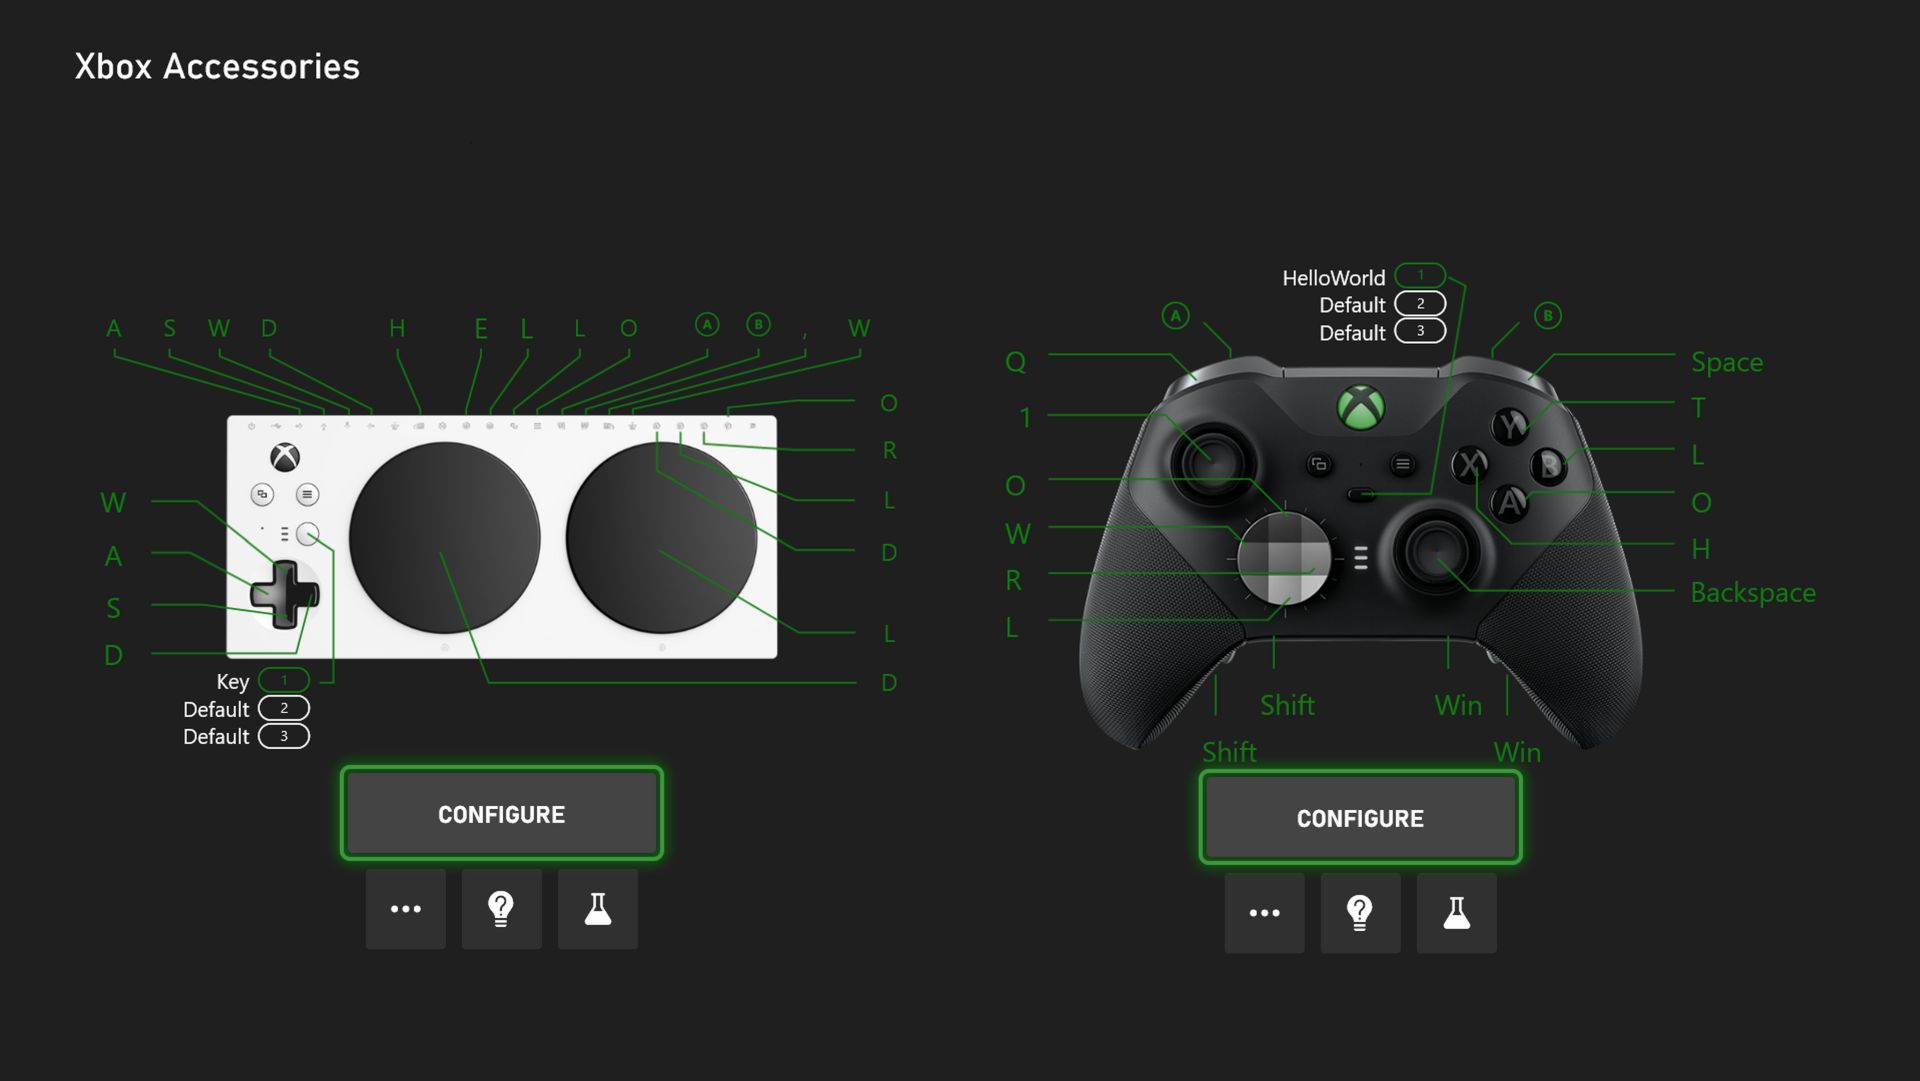 Comment choisir du stockage pour votre Xbox Series X